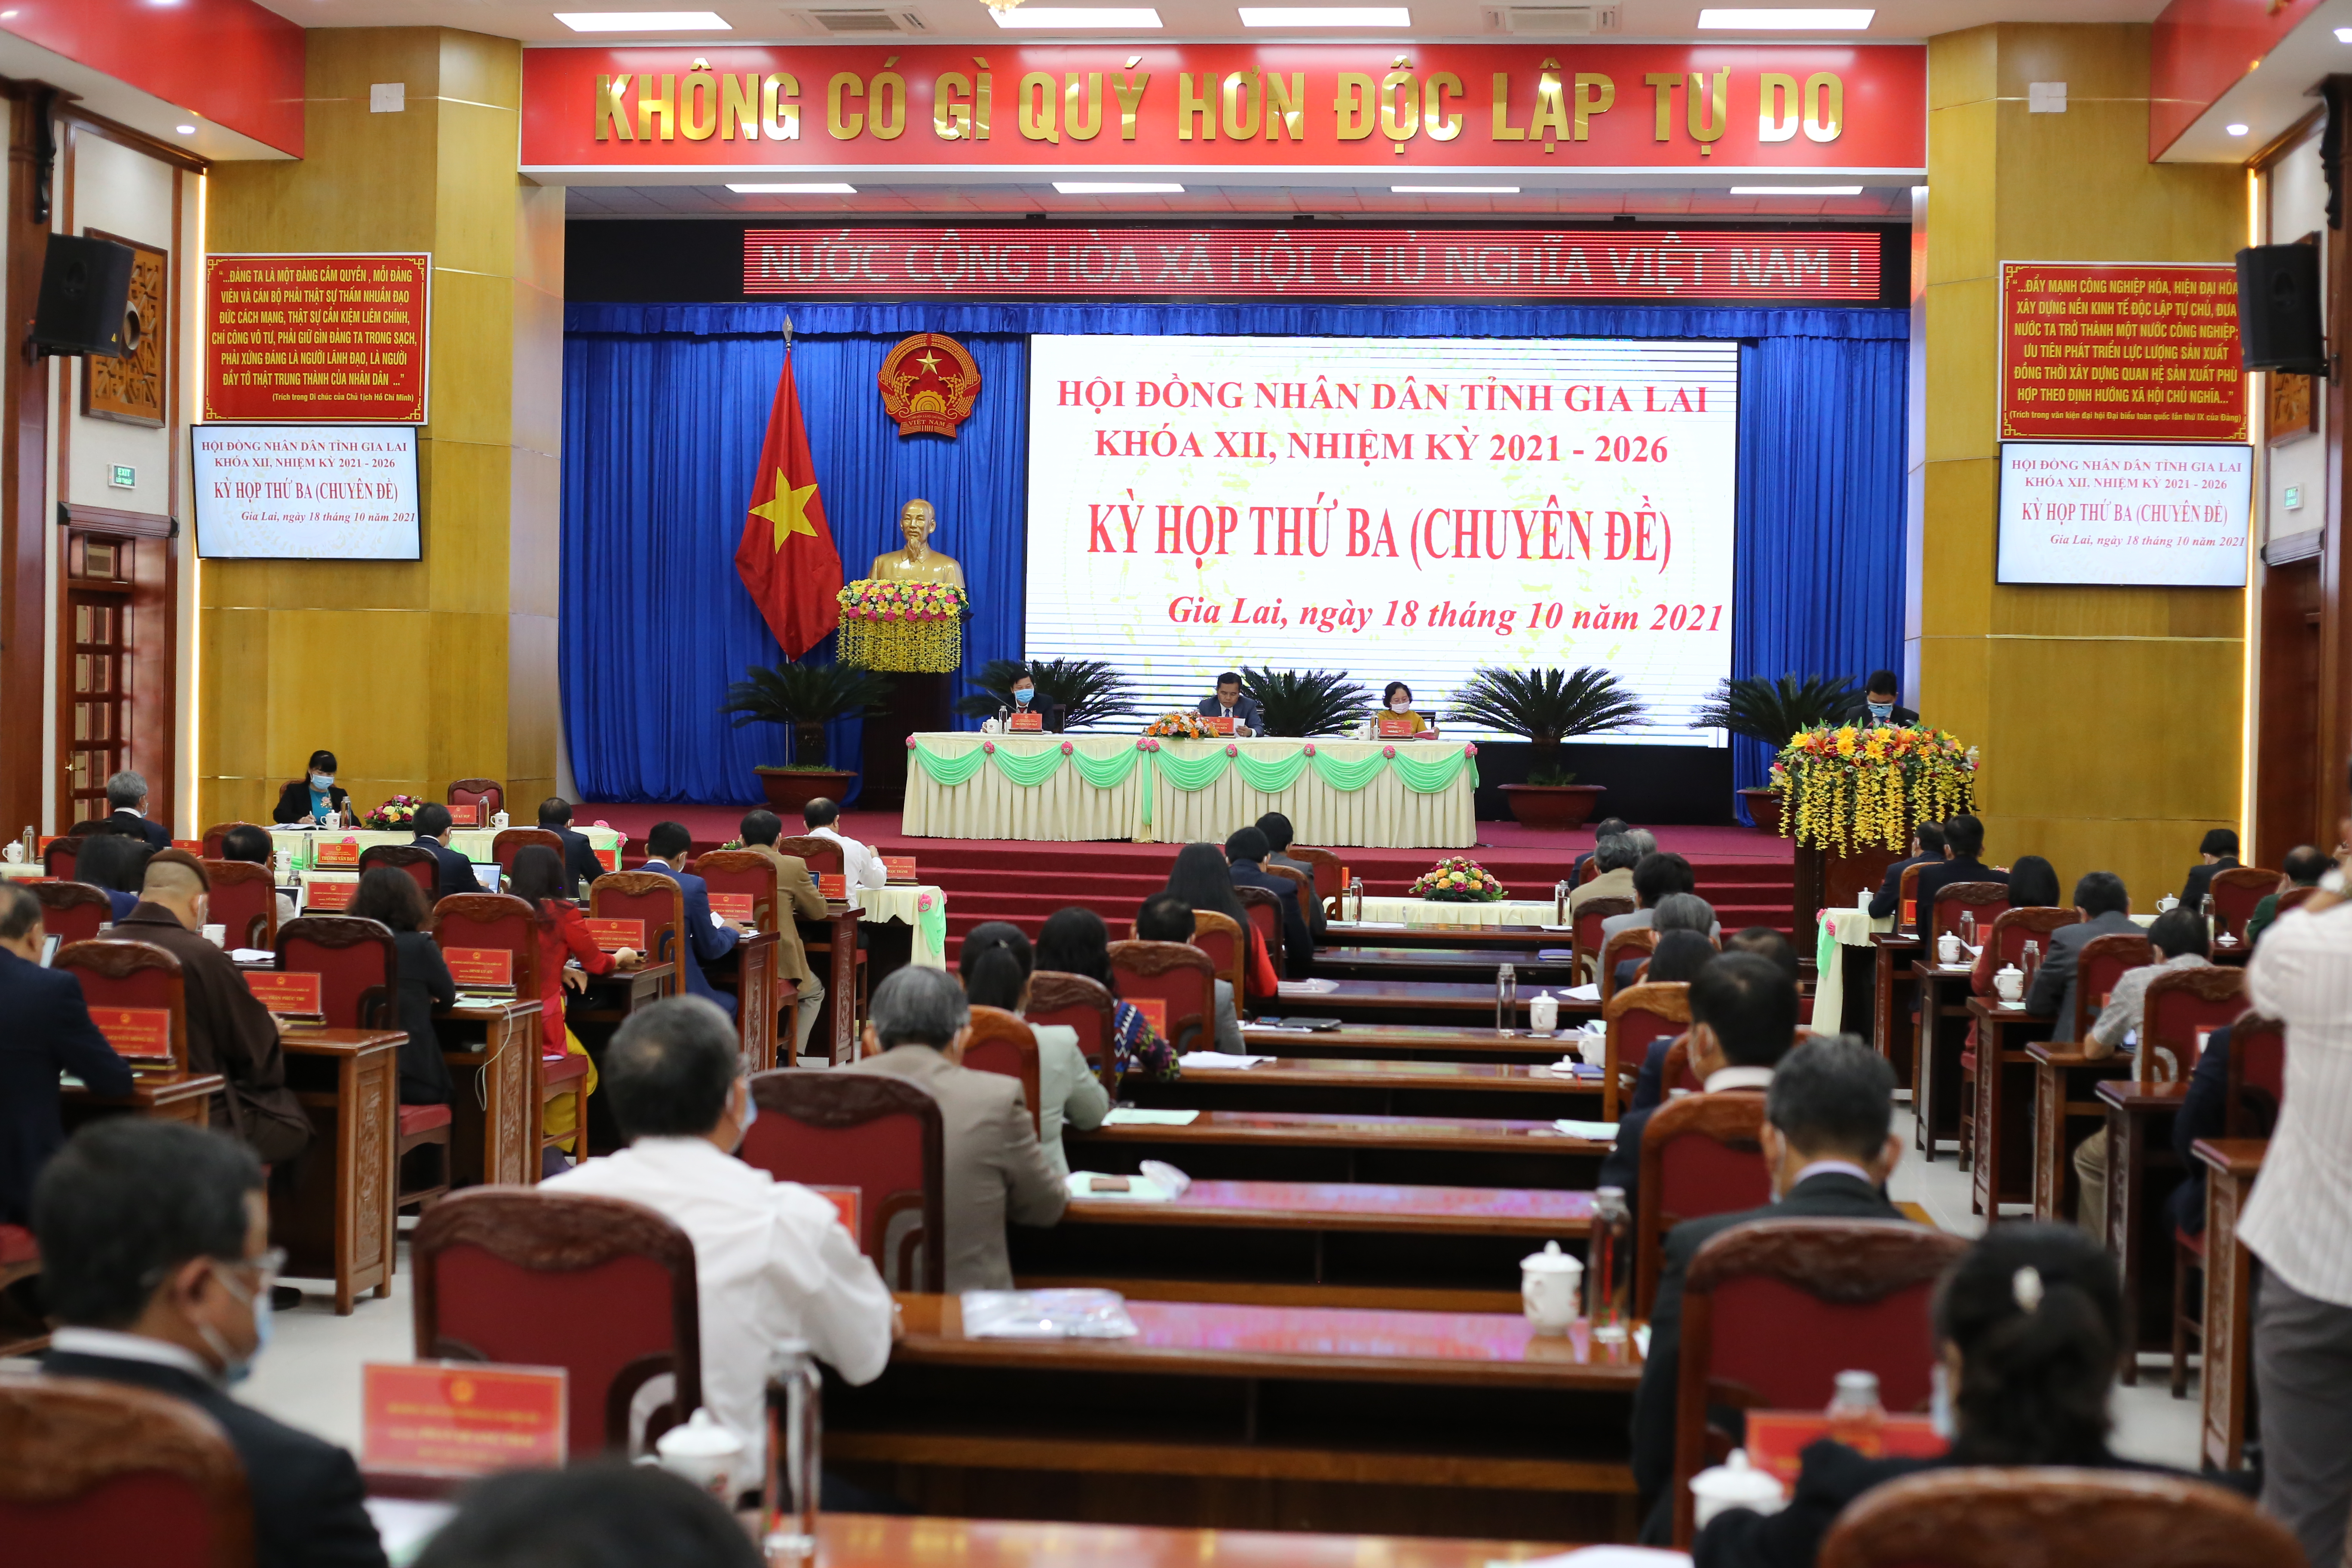 Article Sáng 18/10/2021 HĐND tỉnh Gia Lai tổ chức kỳ họp thứ 3 (chuyên đề)